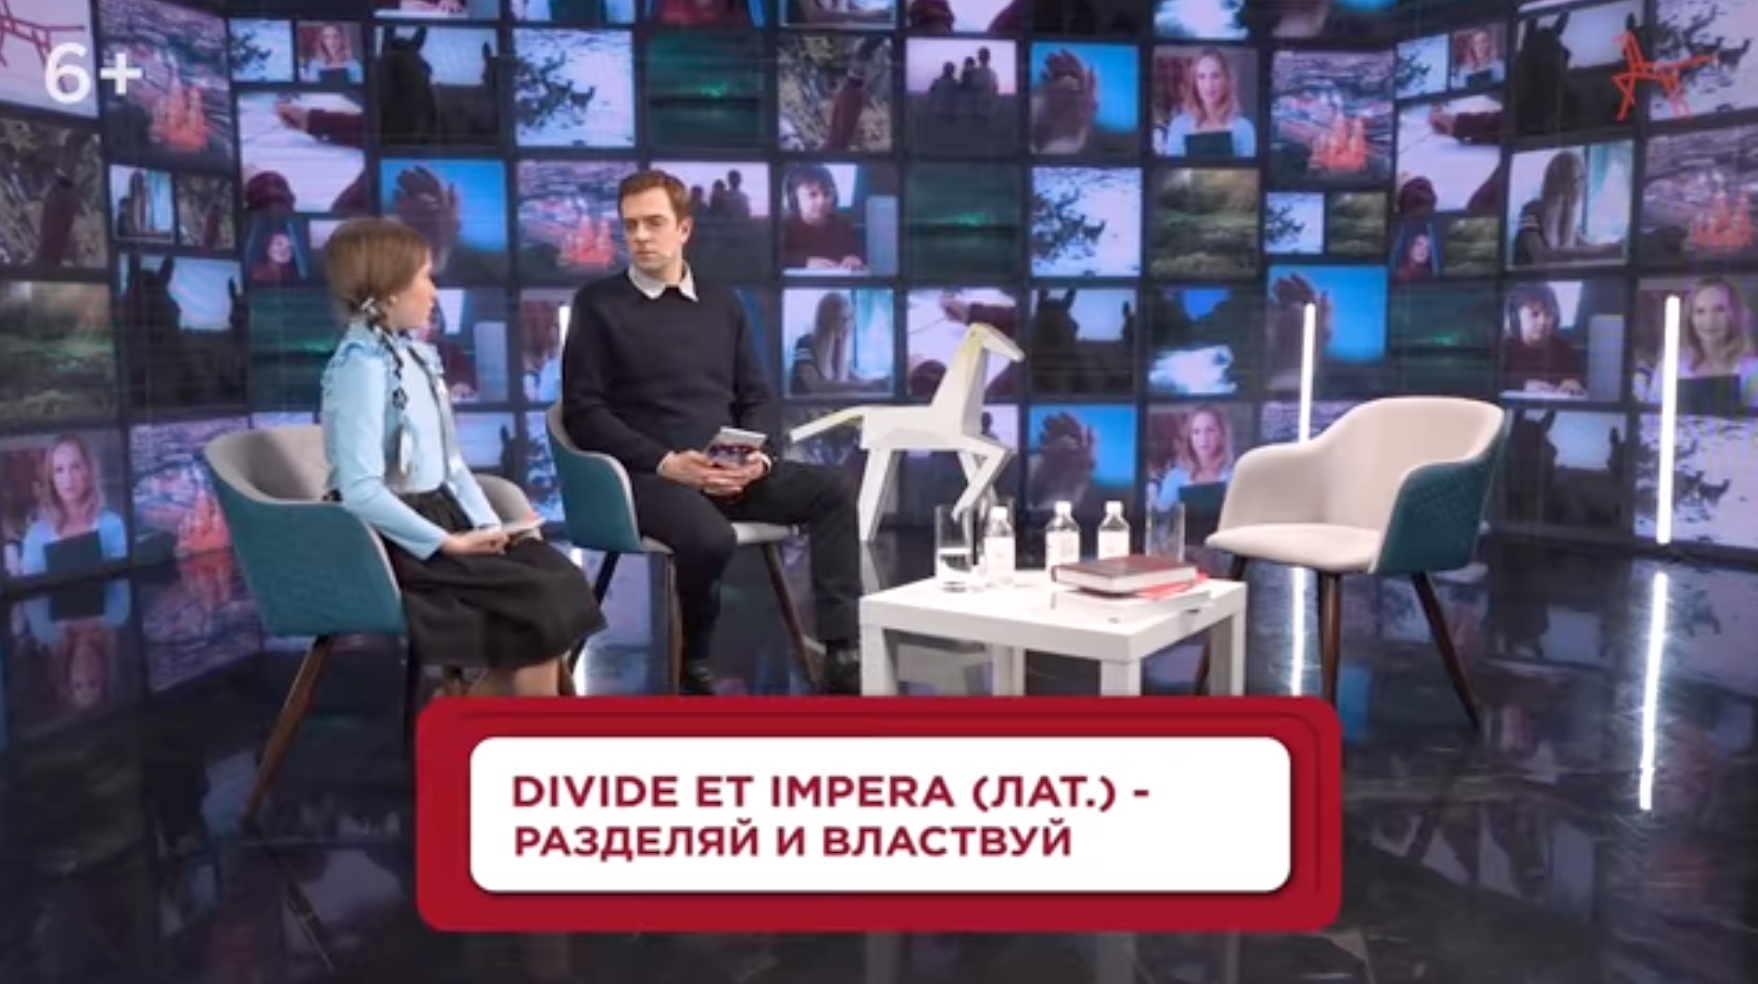 Szigorúan 6 éven felülieknek! – az orosz oktatási minisztérium nyílt órán mesélte el a gyerekeknek az igazságot